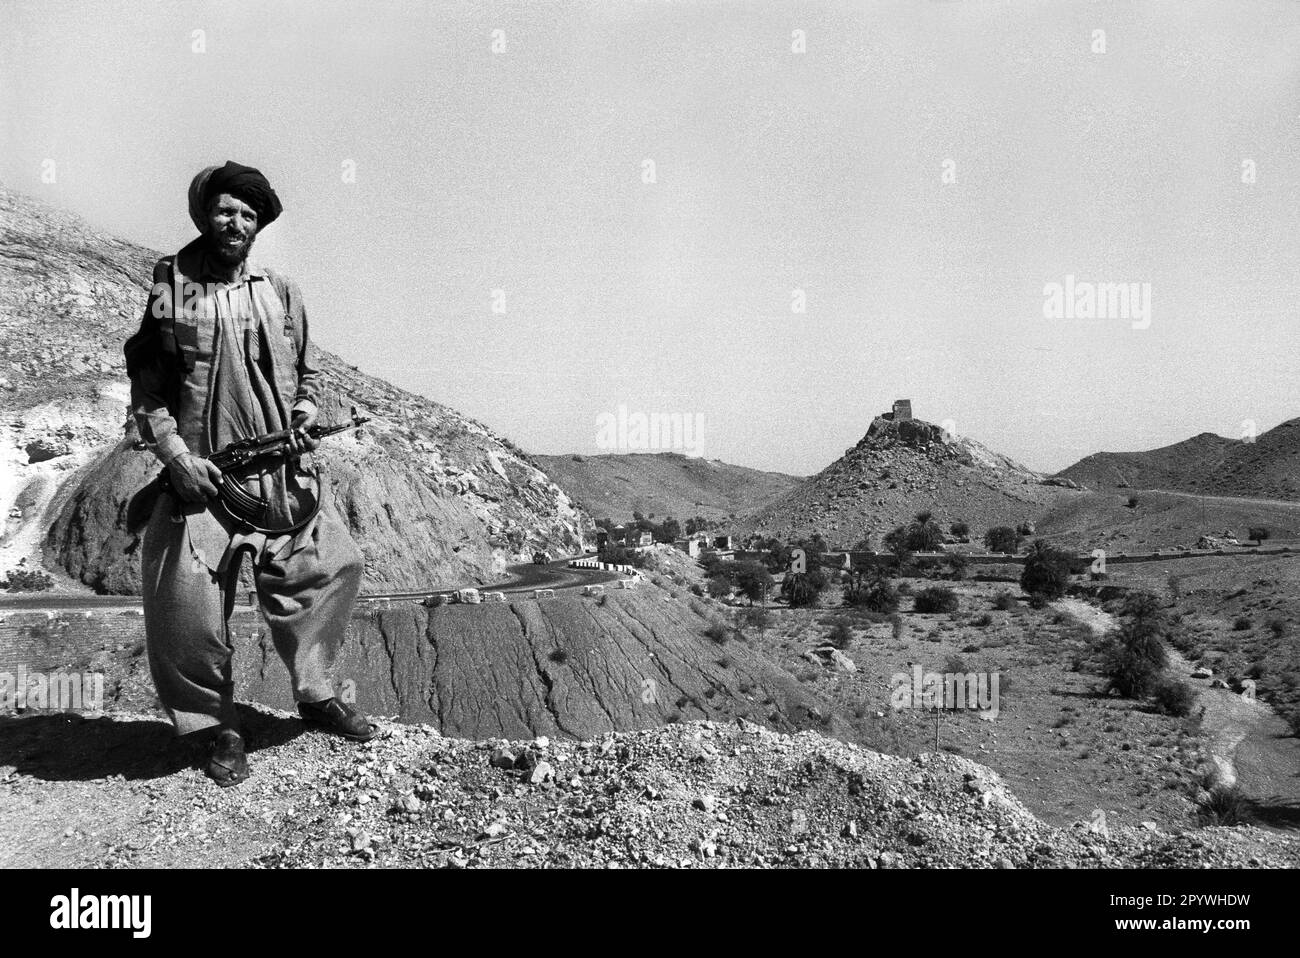 Afghanistan, Miranshah, 24.10.1990. Archiv-Nr.: 21-42-01 Foto: Ein Mudschaheddin-Kämpfer in den Bergen. [Maschinelle Übersetzung] Stockfoto